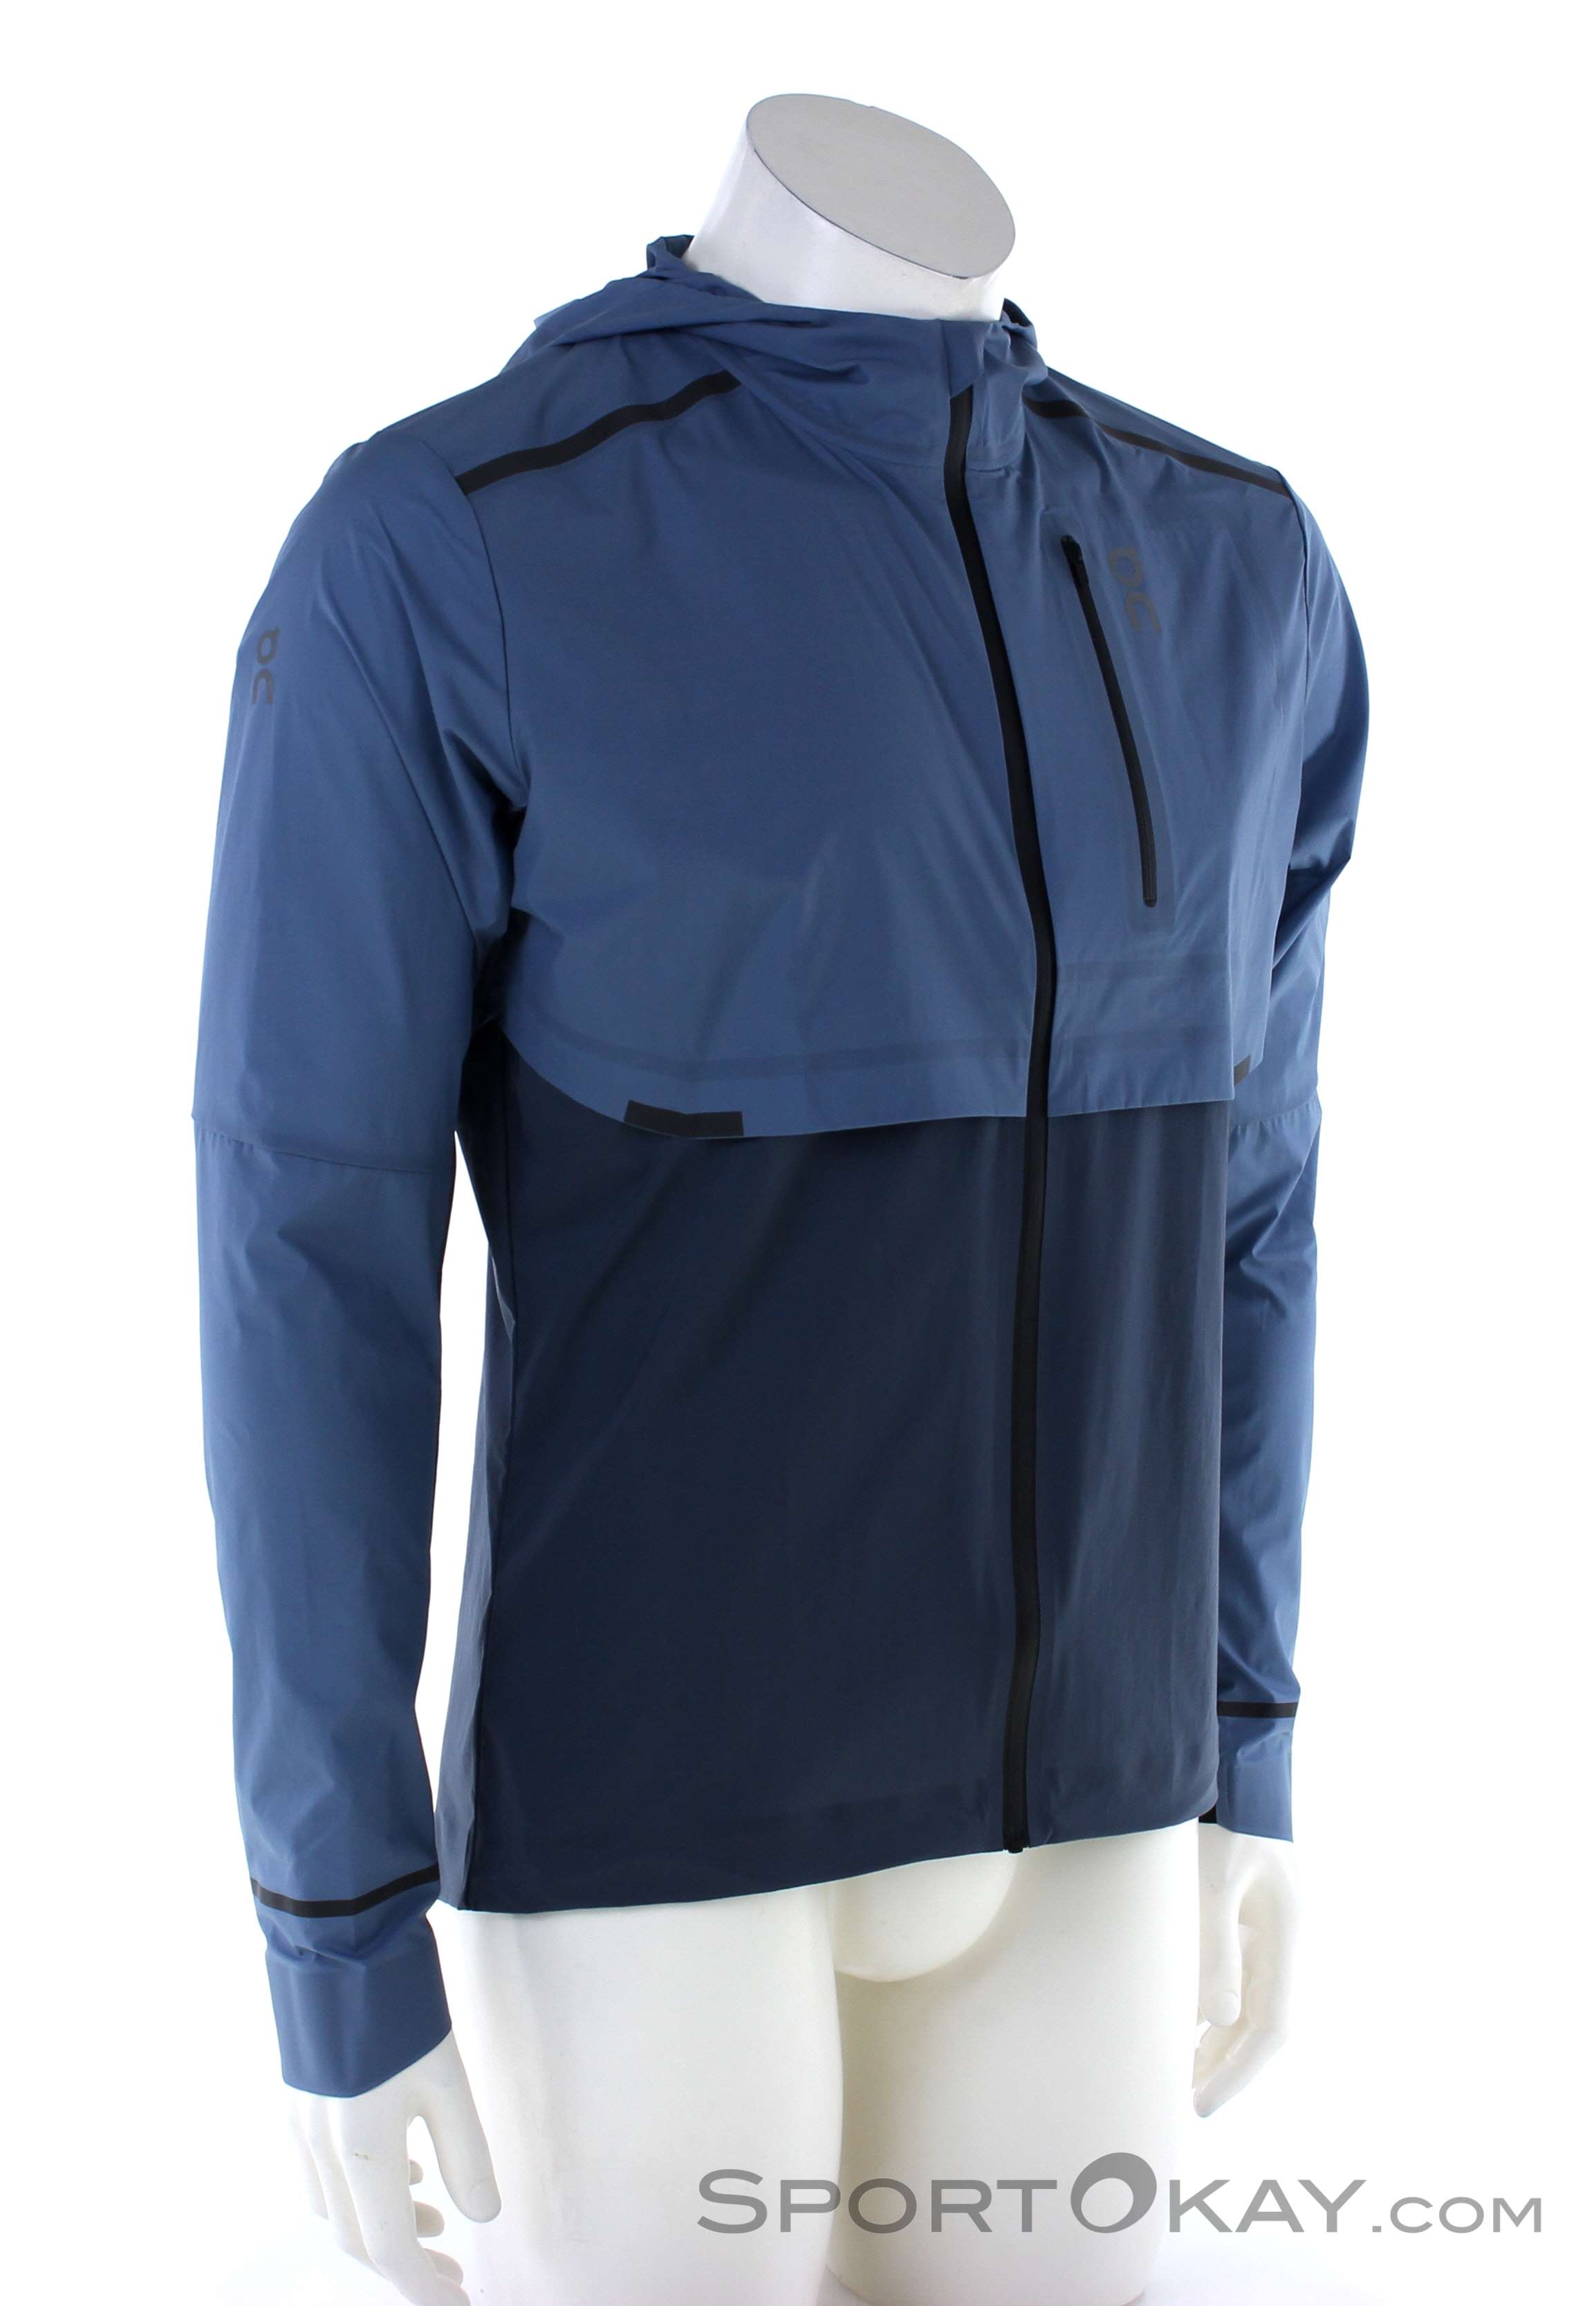 On Weather Jacket Mens Running Jacket - Jackets - Running Clothing